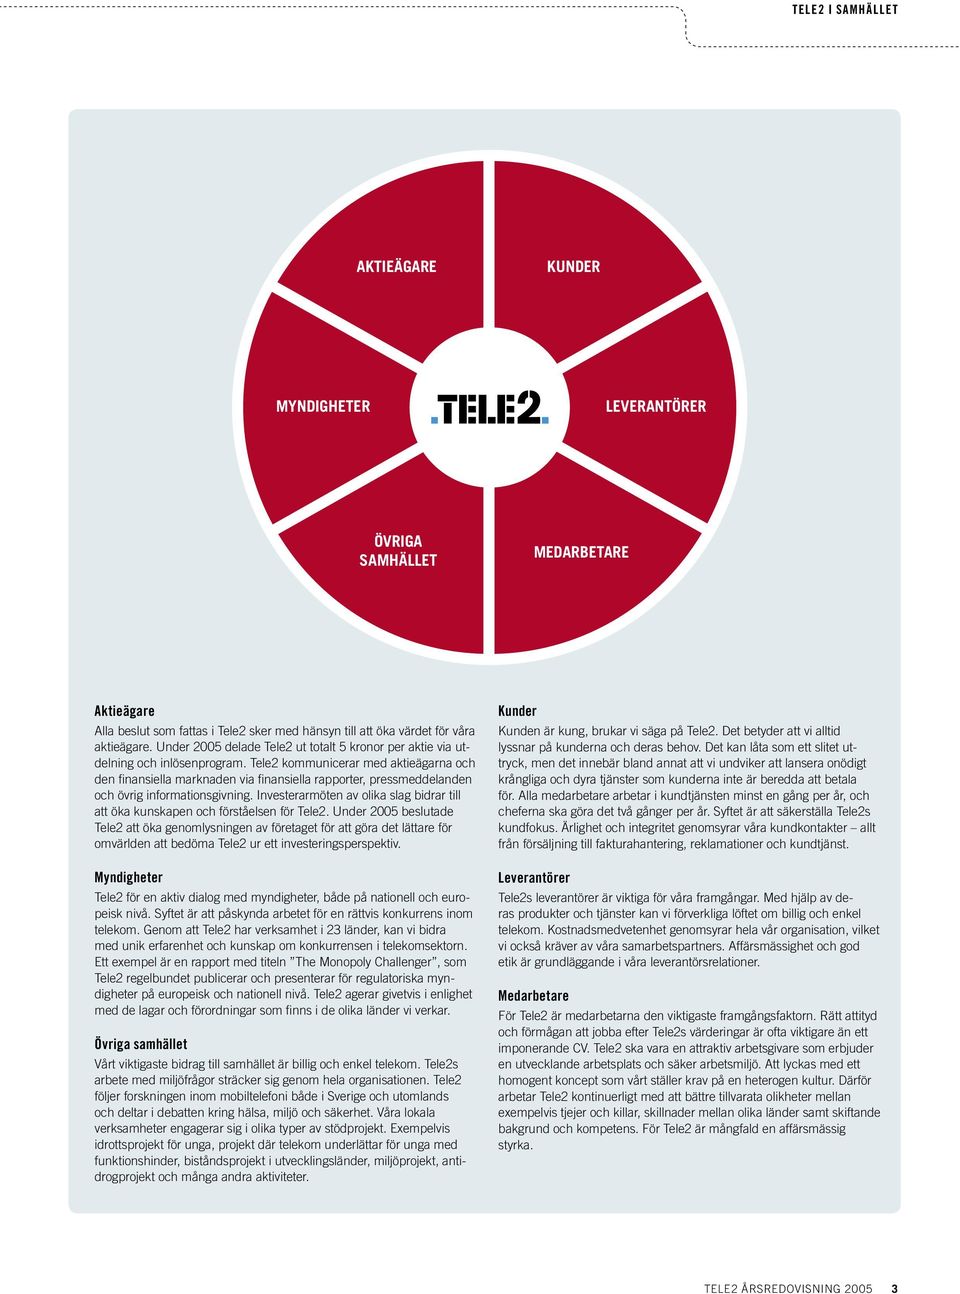 Tele2 kommunicerar med aktieägarna och den finansiella marknaden via finansiella rapporter, pressmeddelanden och övrig informationsgivning.